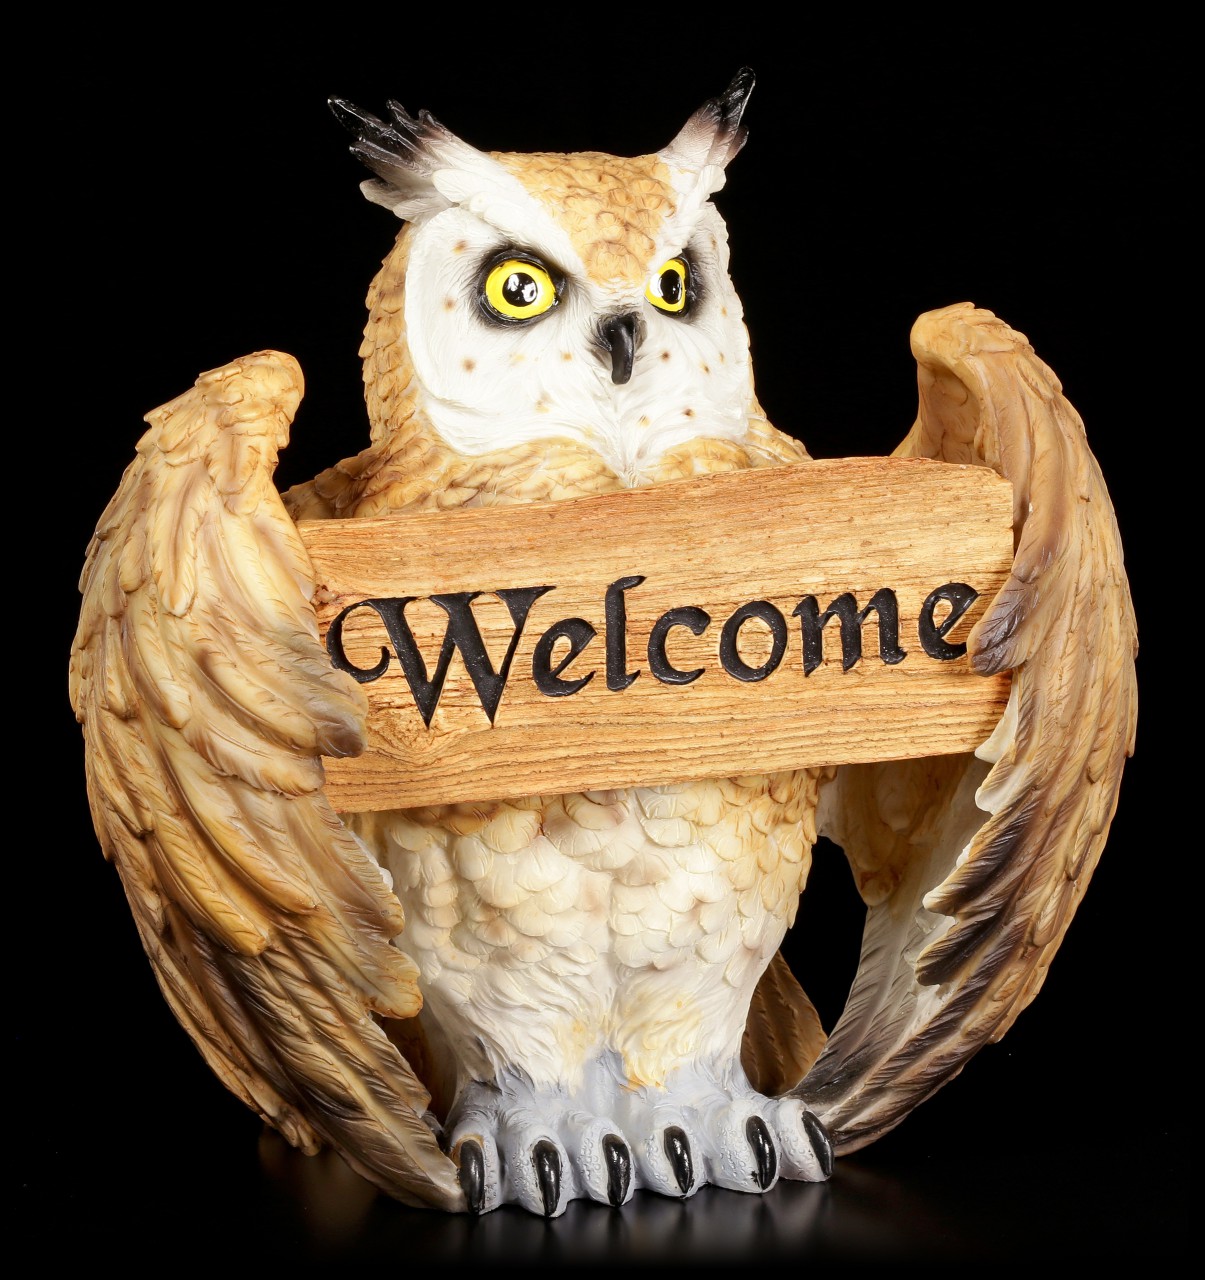 Owl Figure - Owl's Welcome